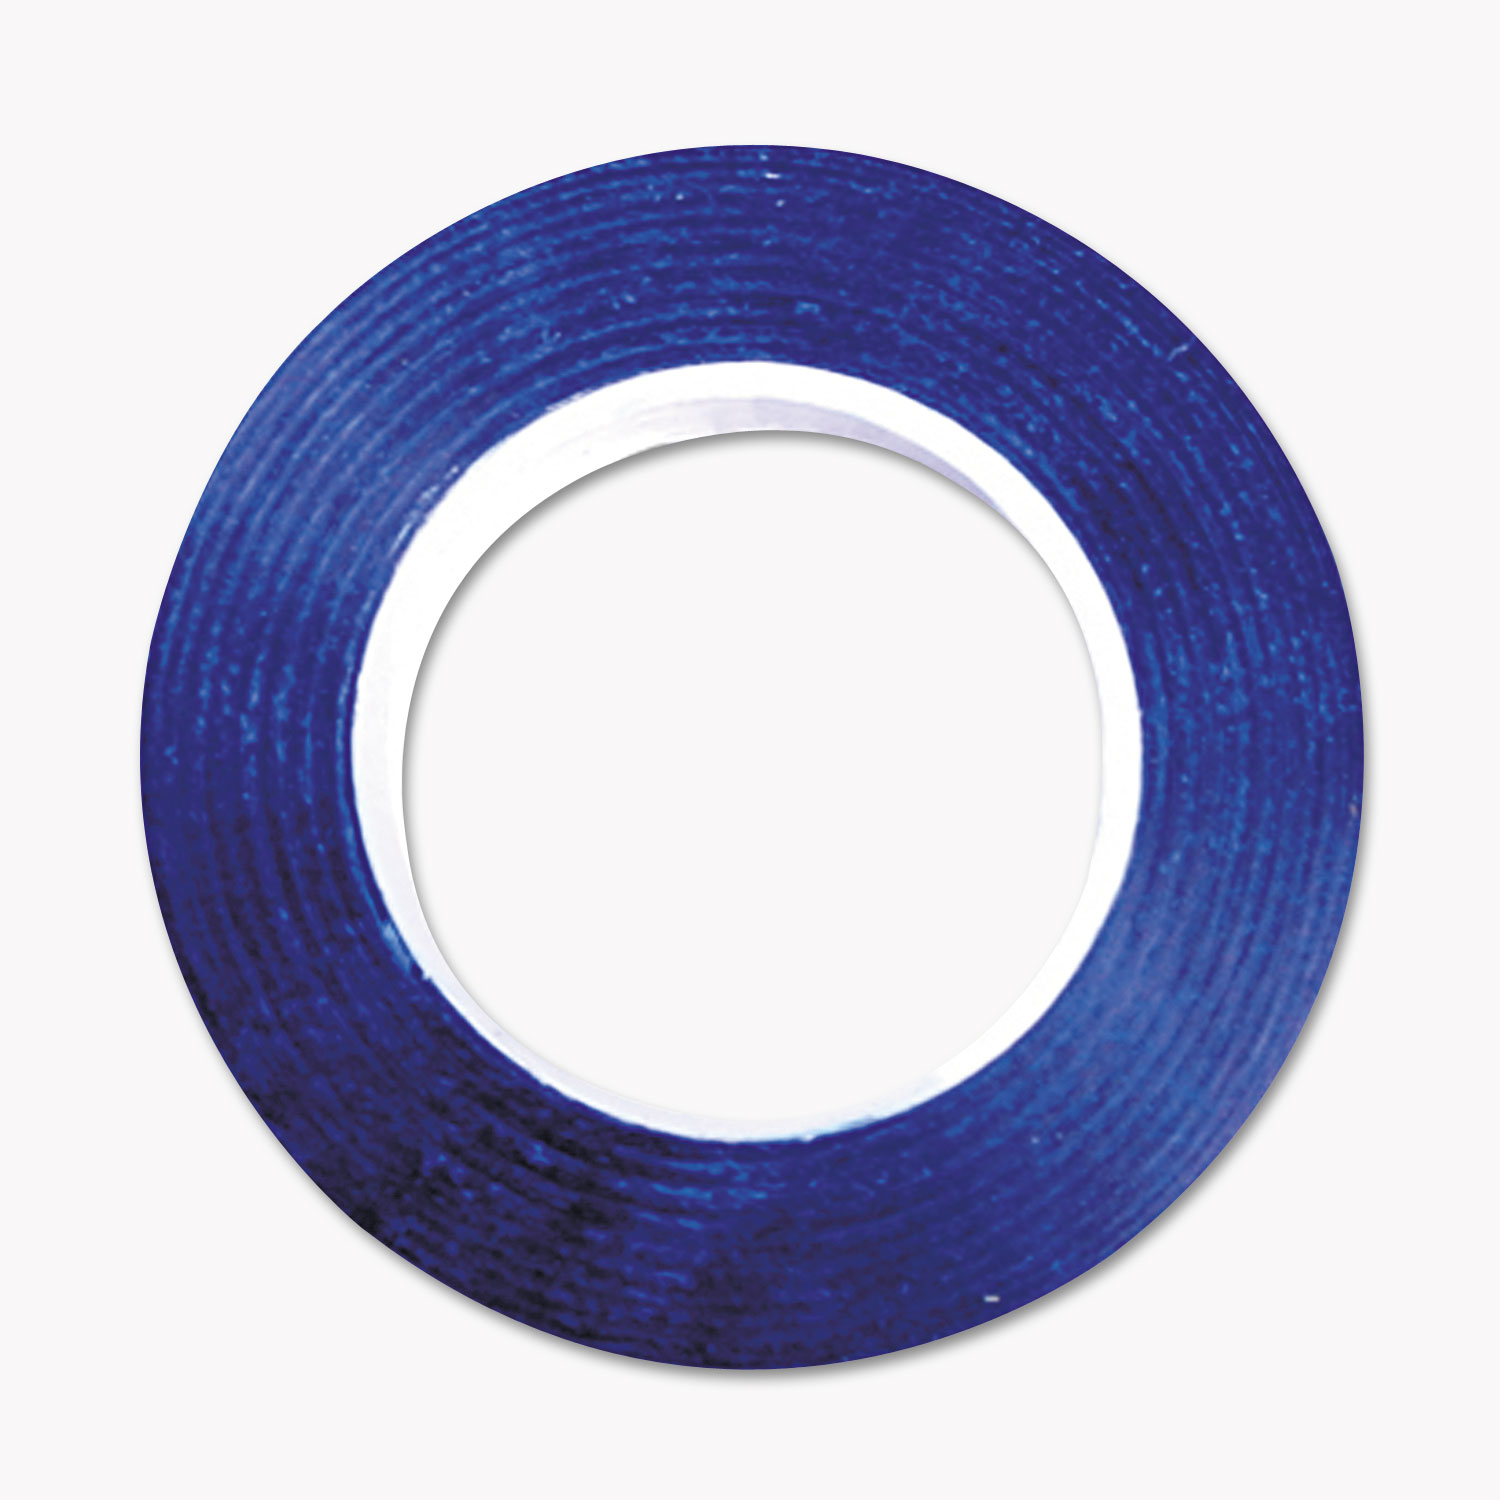 Art Tape, Blue Gloss, 1/4 x 324